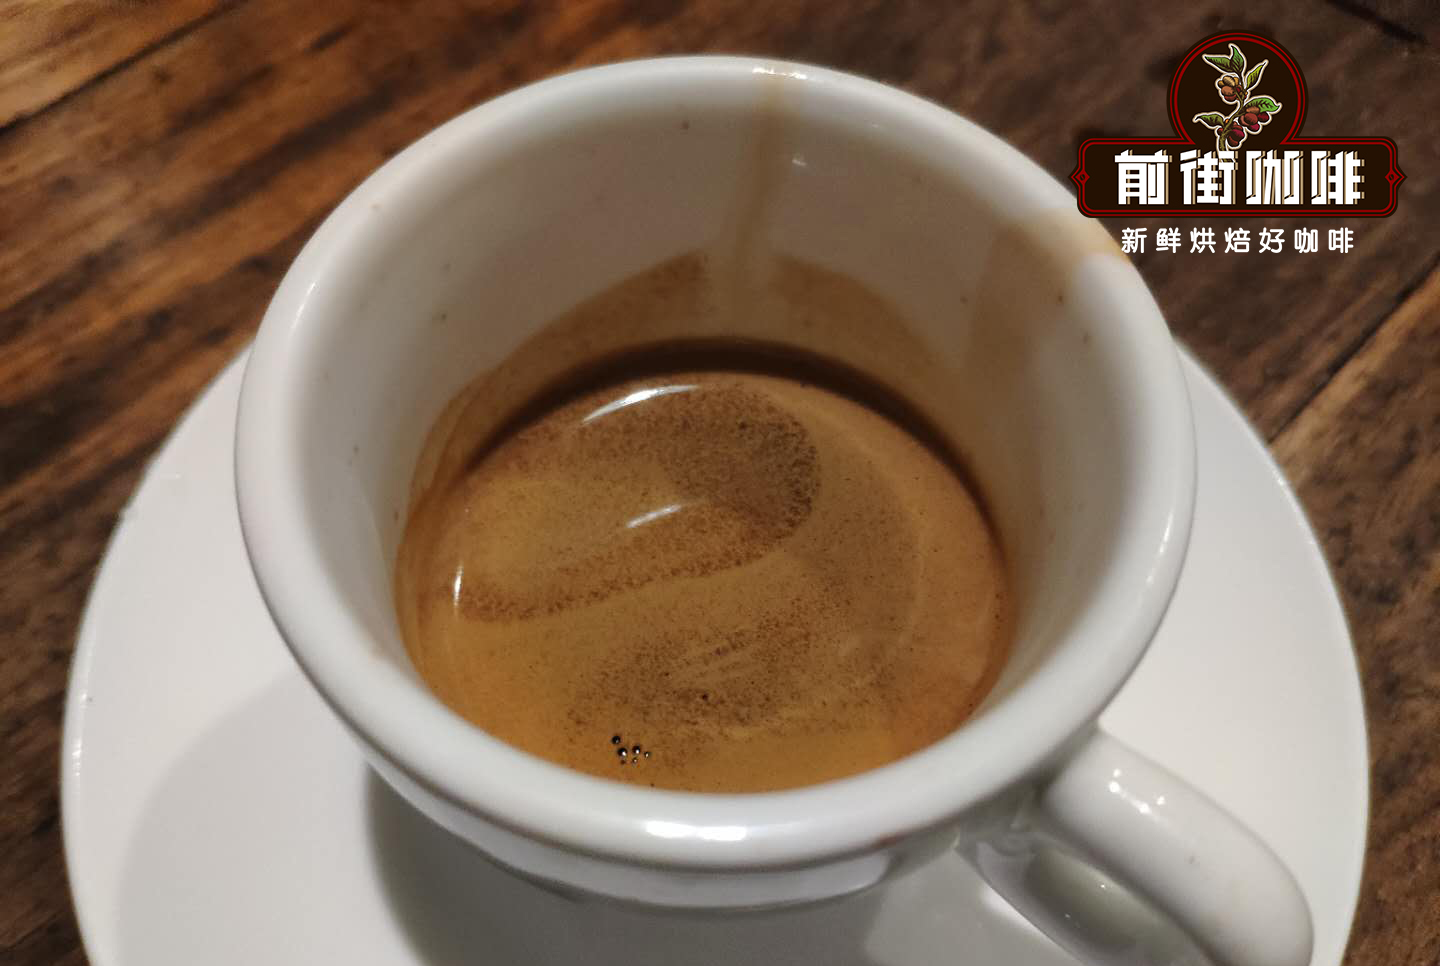 罗布斯塔品种的非洲乌干达咖啡适合用来做速溶咖啡吗